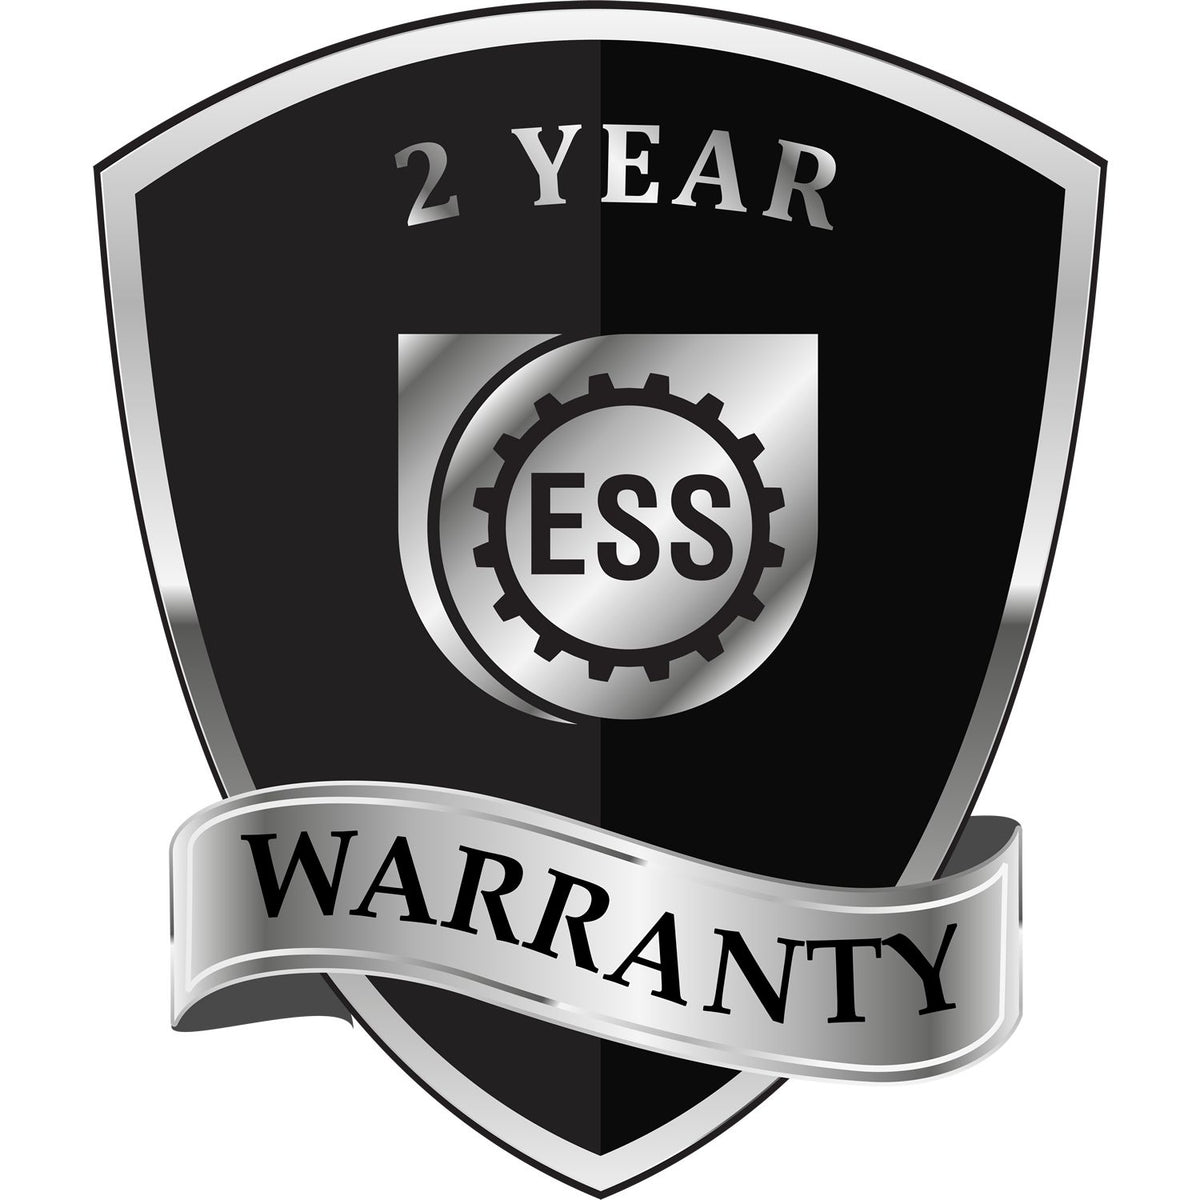 A black and silver badge or emblem showing warranty information for the Hybrid Utah Land Surveyor Seal